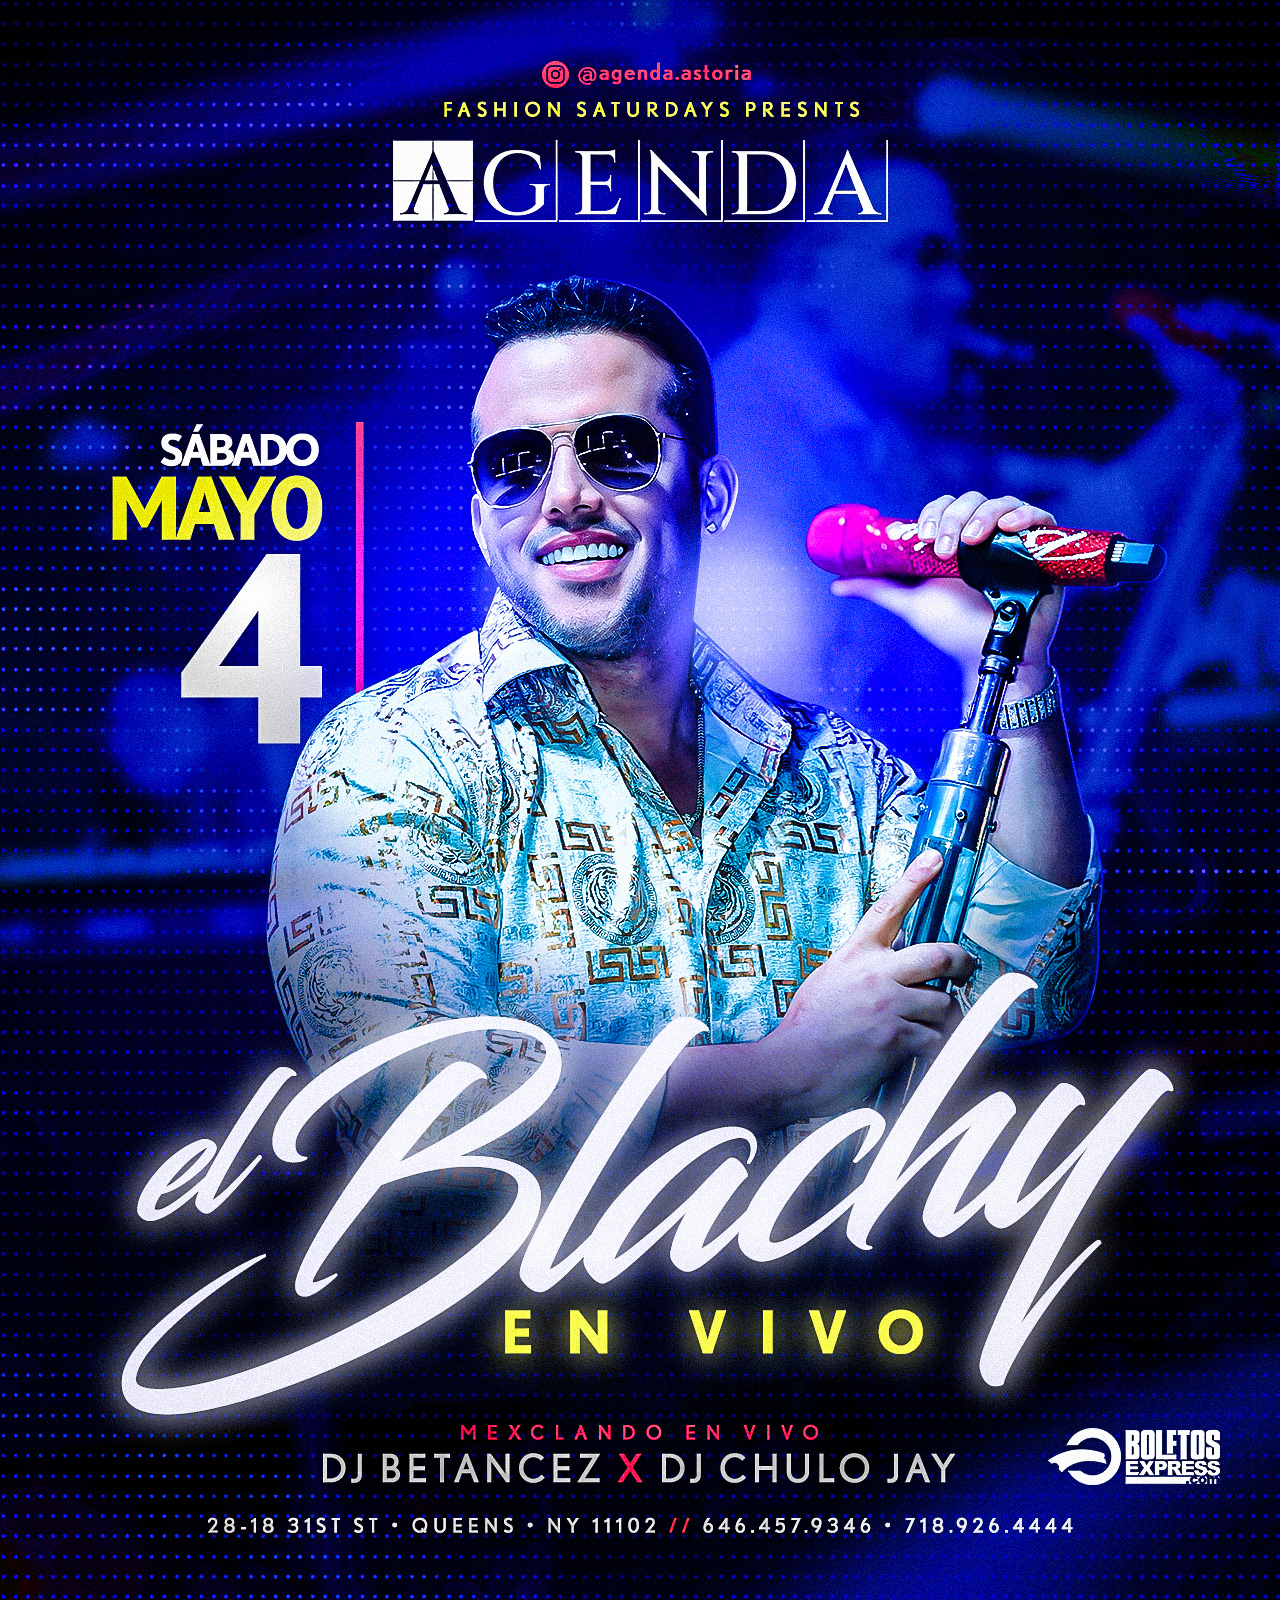 El Blachy - DJ Betancez - DJ Chulo Jay